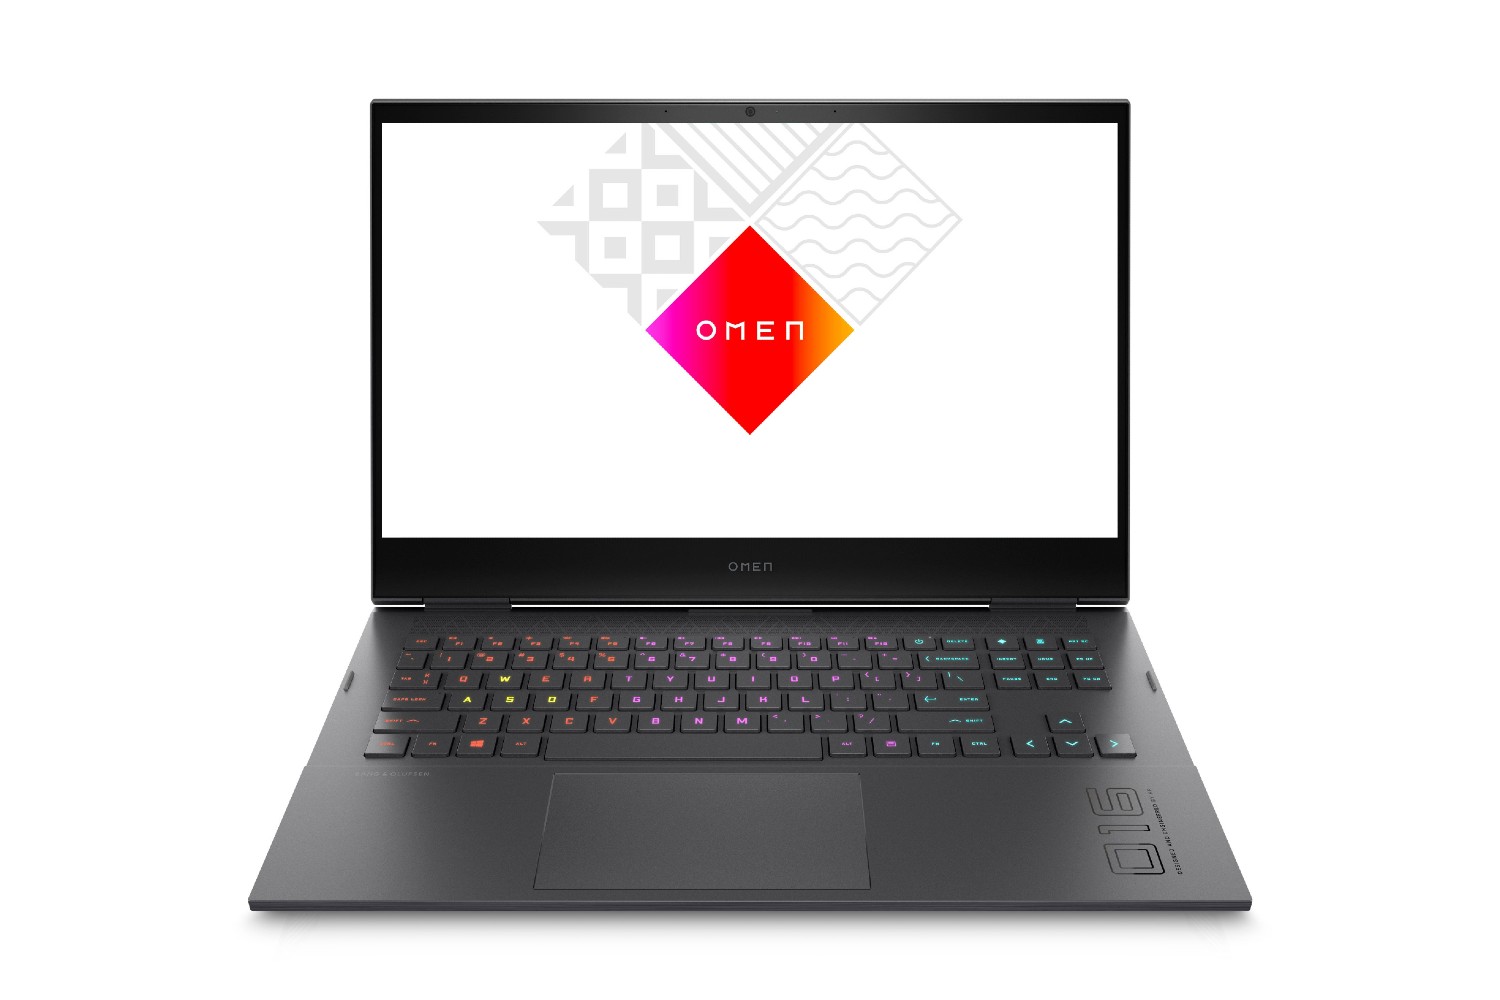 O laptop para jogos HP Omen 16, de 16.1 polegadas, com o logo Omen na tela.